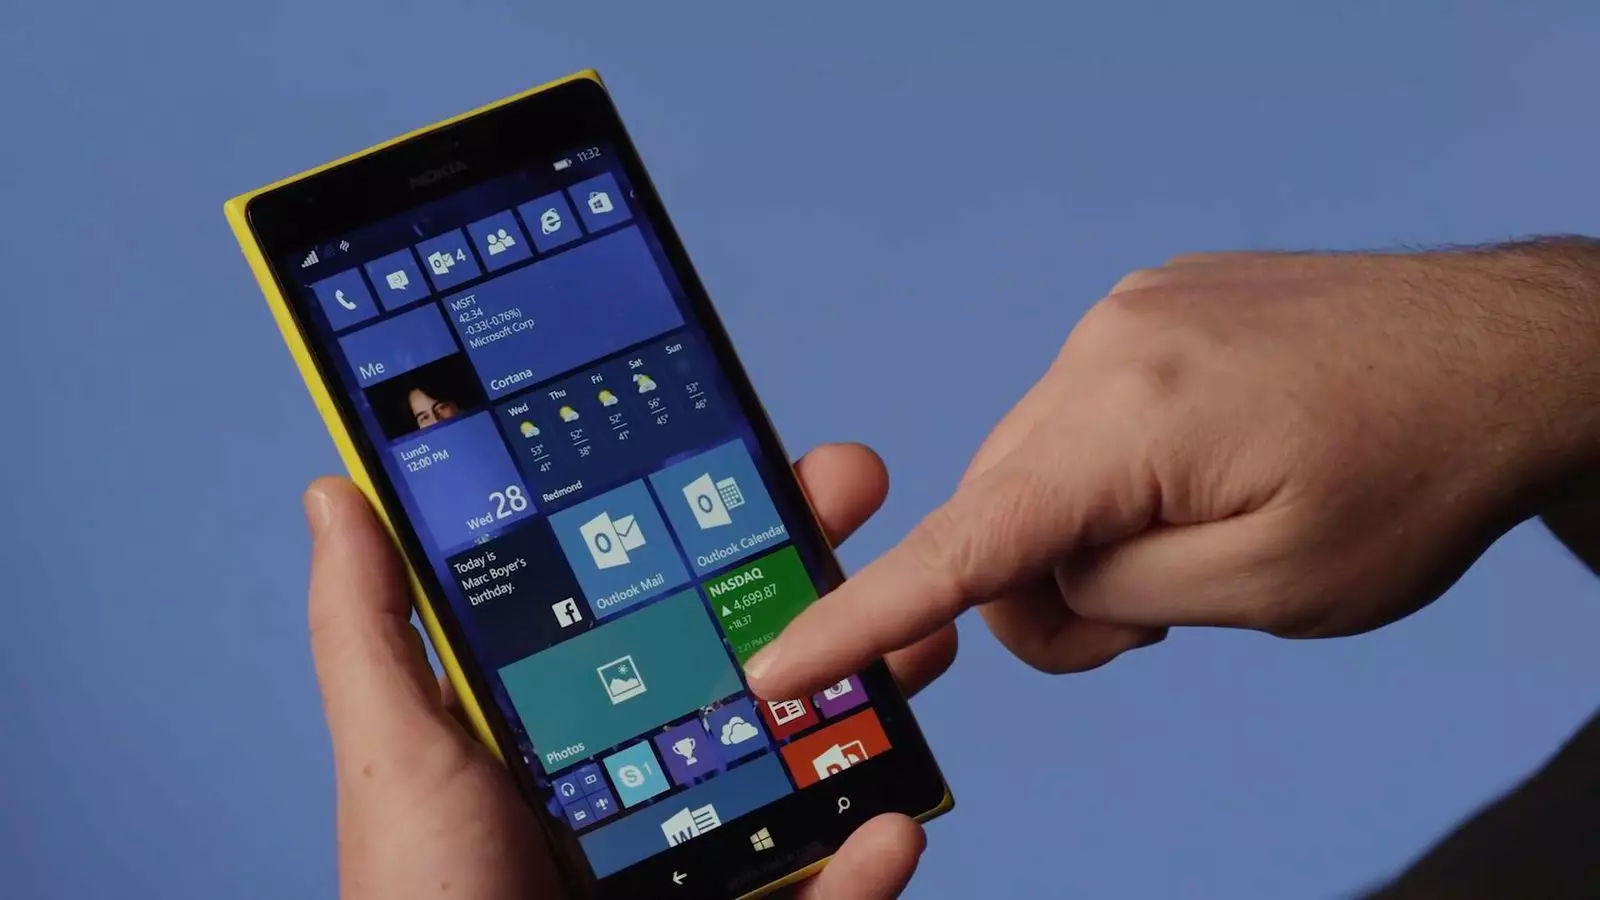 Плиточный дизайн Windows Phone многим очень не понравился, а сама ОС не могла предоставить никаких интересных инноваций